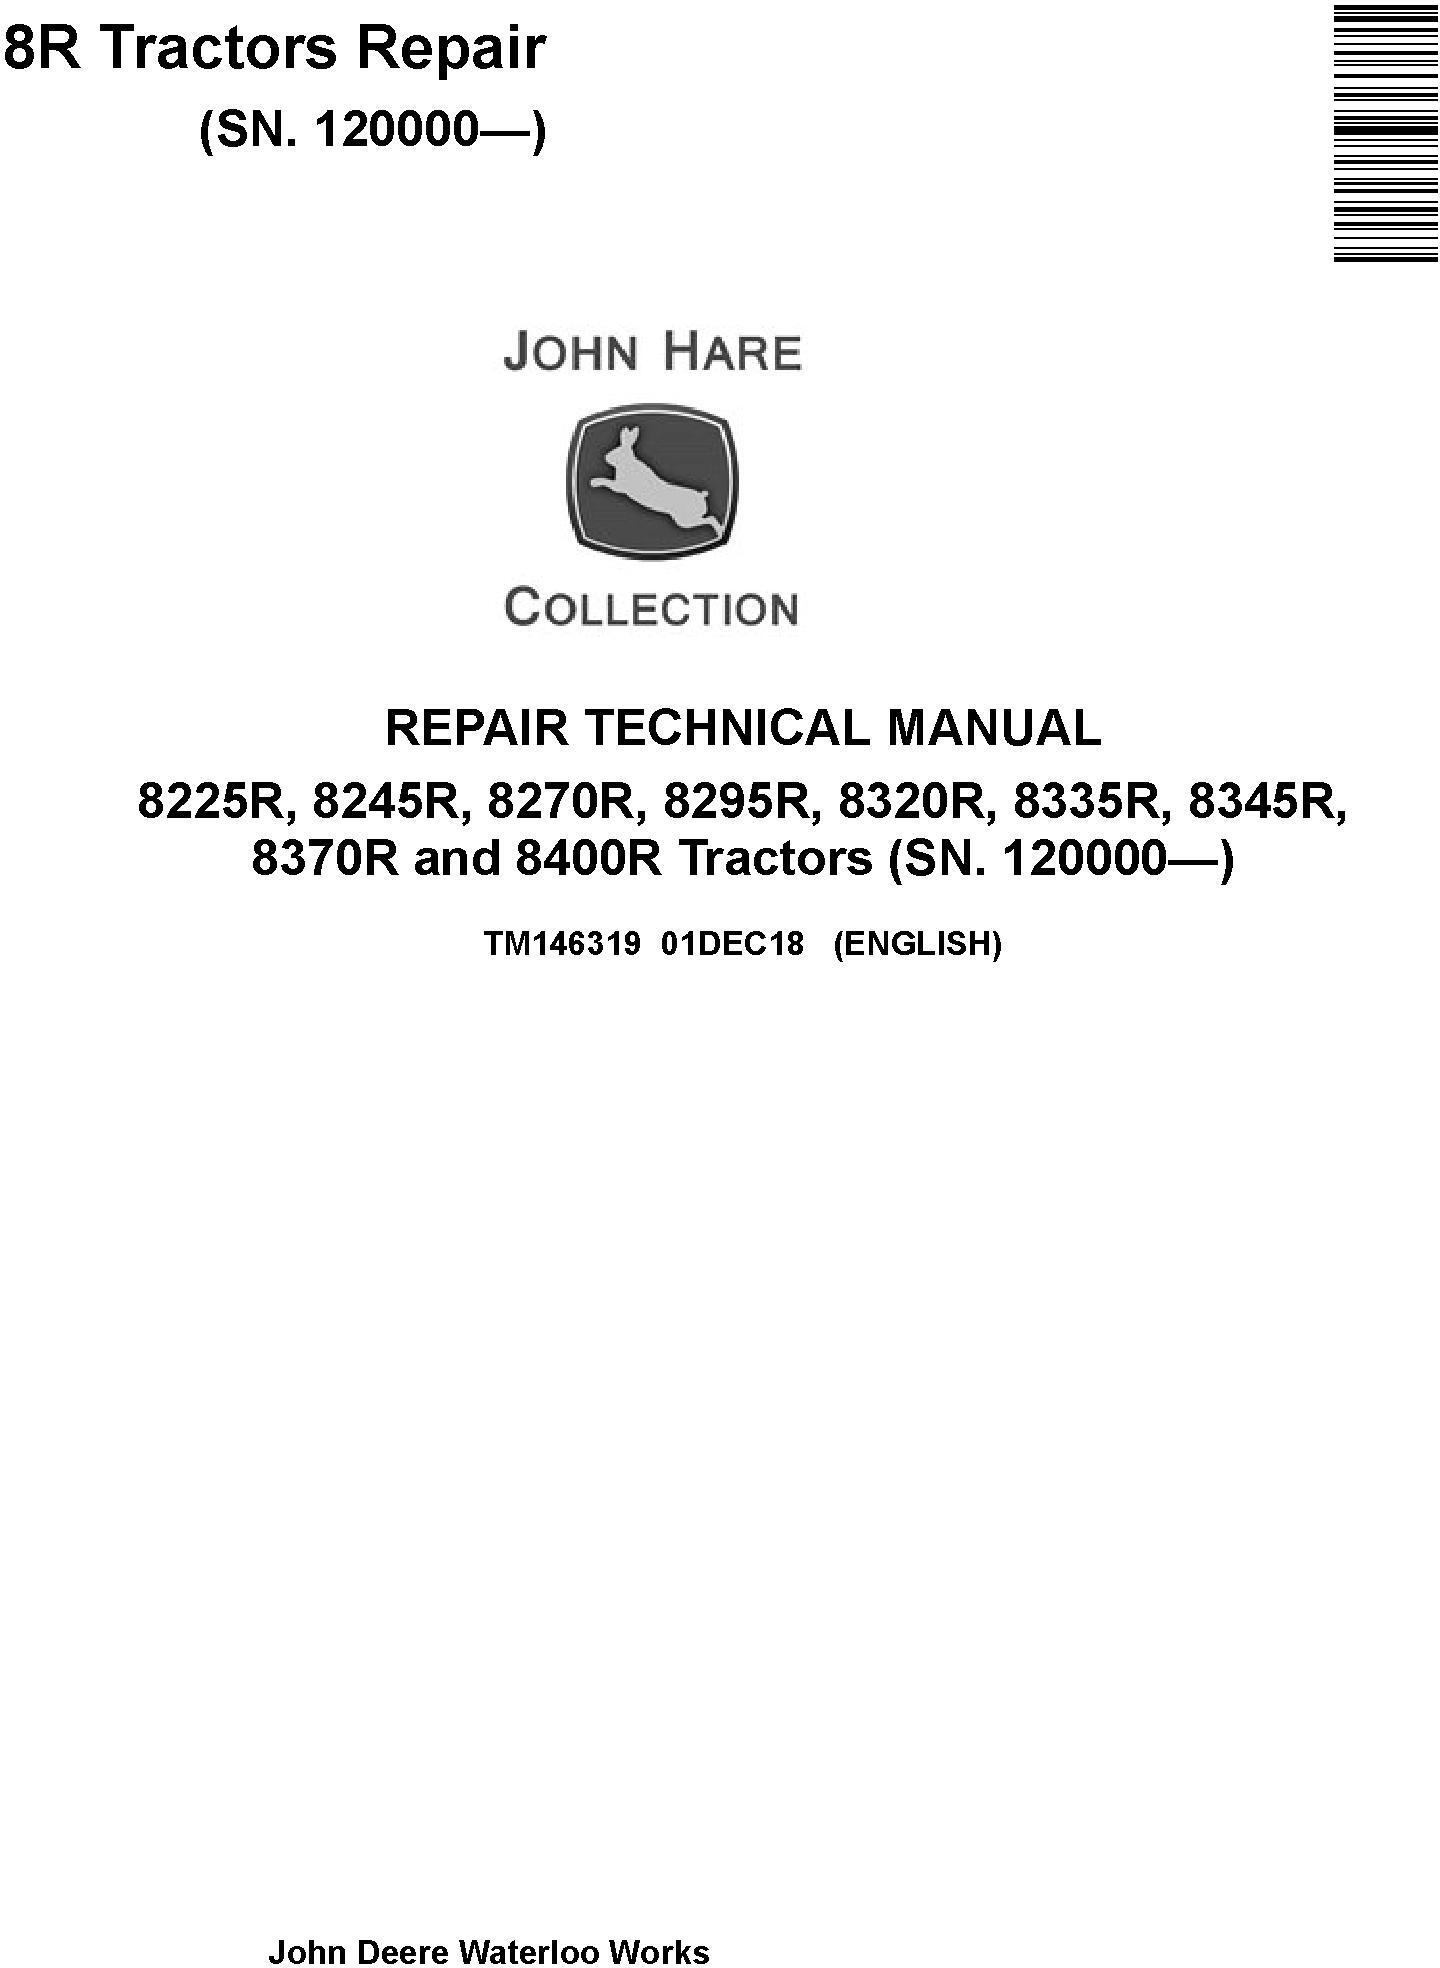 John Deere 8225R 8245R 8270R 8295R 8320R 8335R 8345R 8370R 8400R Tractor Repair Manual TM146319